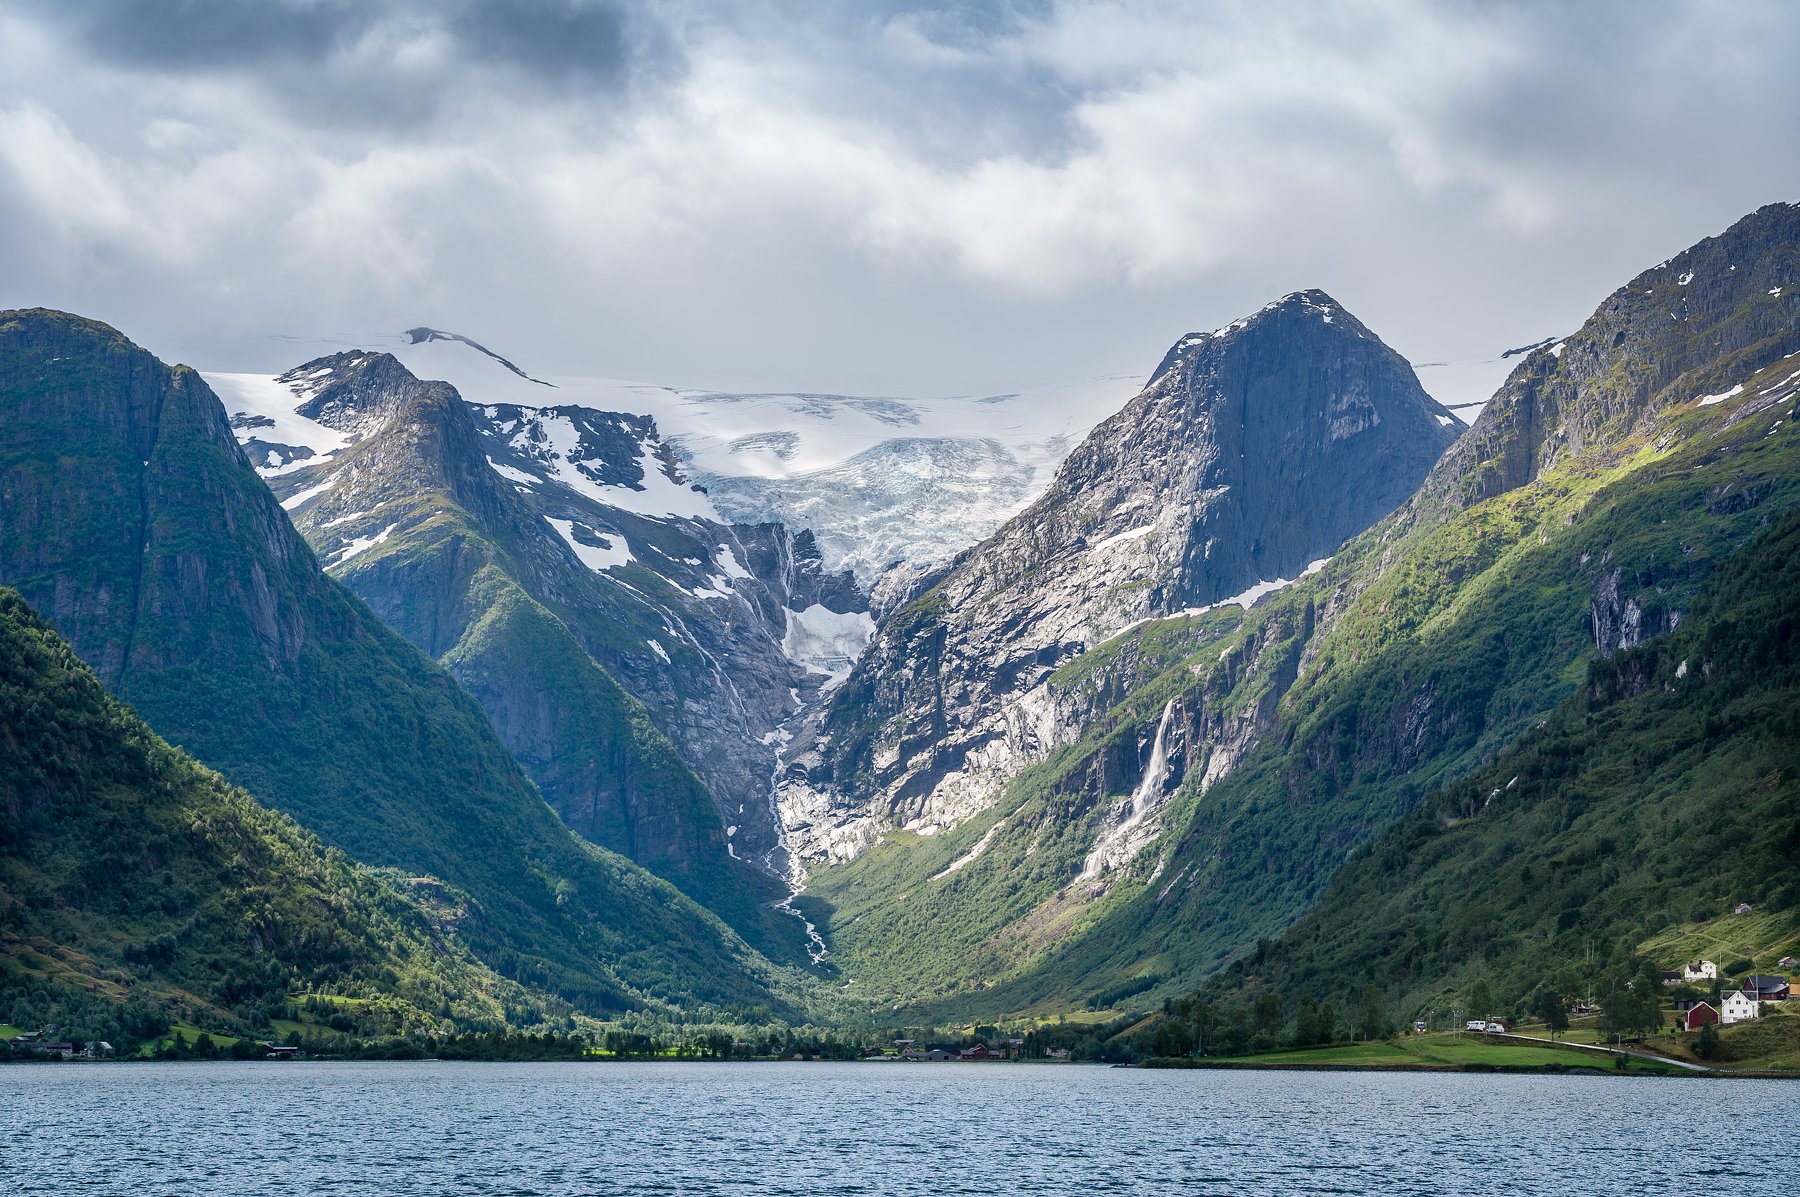 Норвегия, фьорд, скалы, горы, ледник, Бриксдальсбреен, пейзаж, достопримечательности, популярные места, путешествия, озеро, вода, залив, горы, пасмурно, солнце, склоны, крутые, NIKIFOROV ALEXANDER